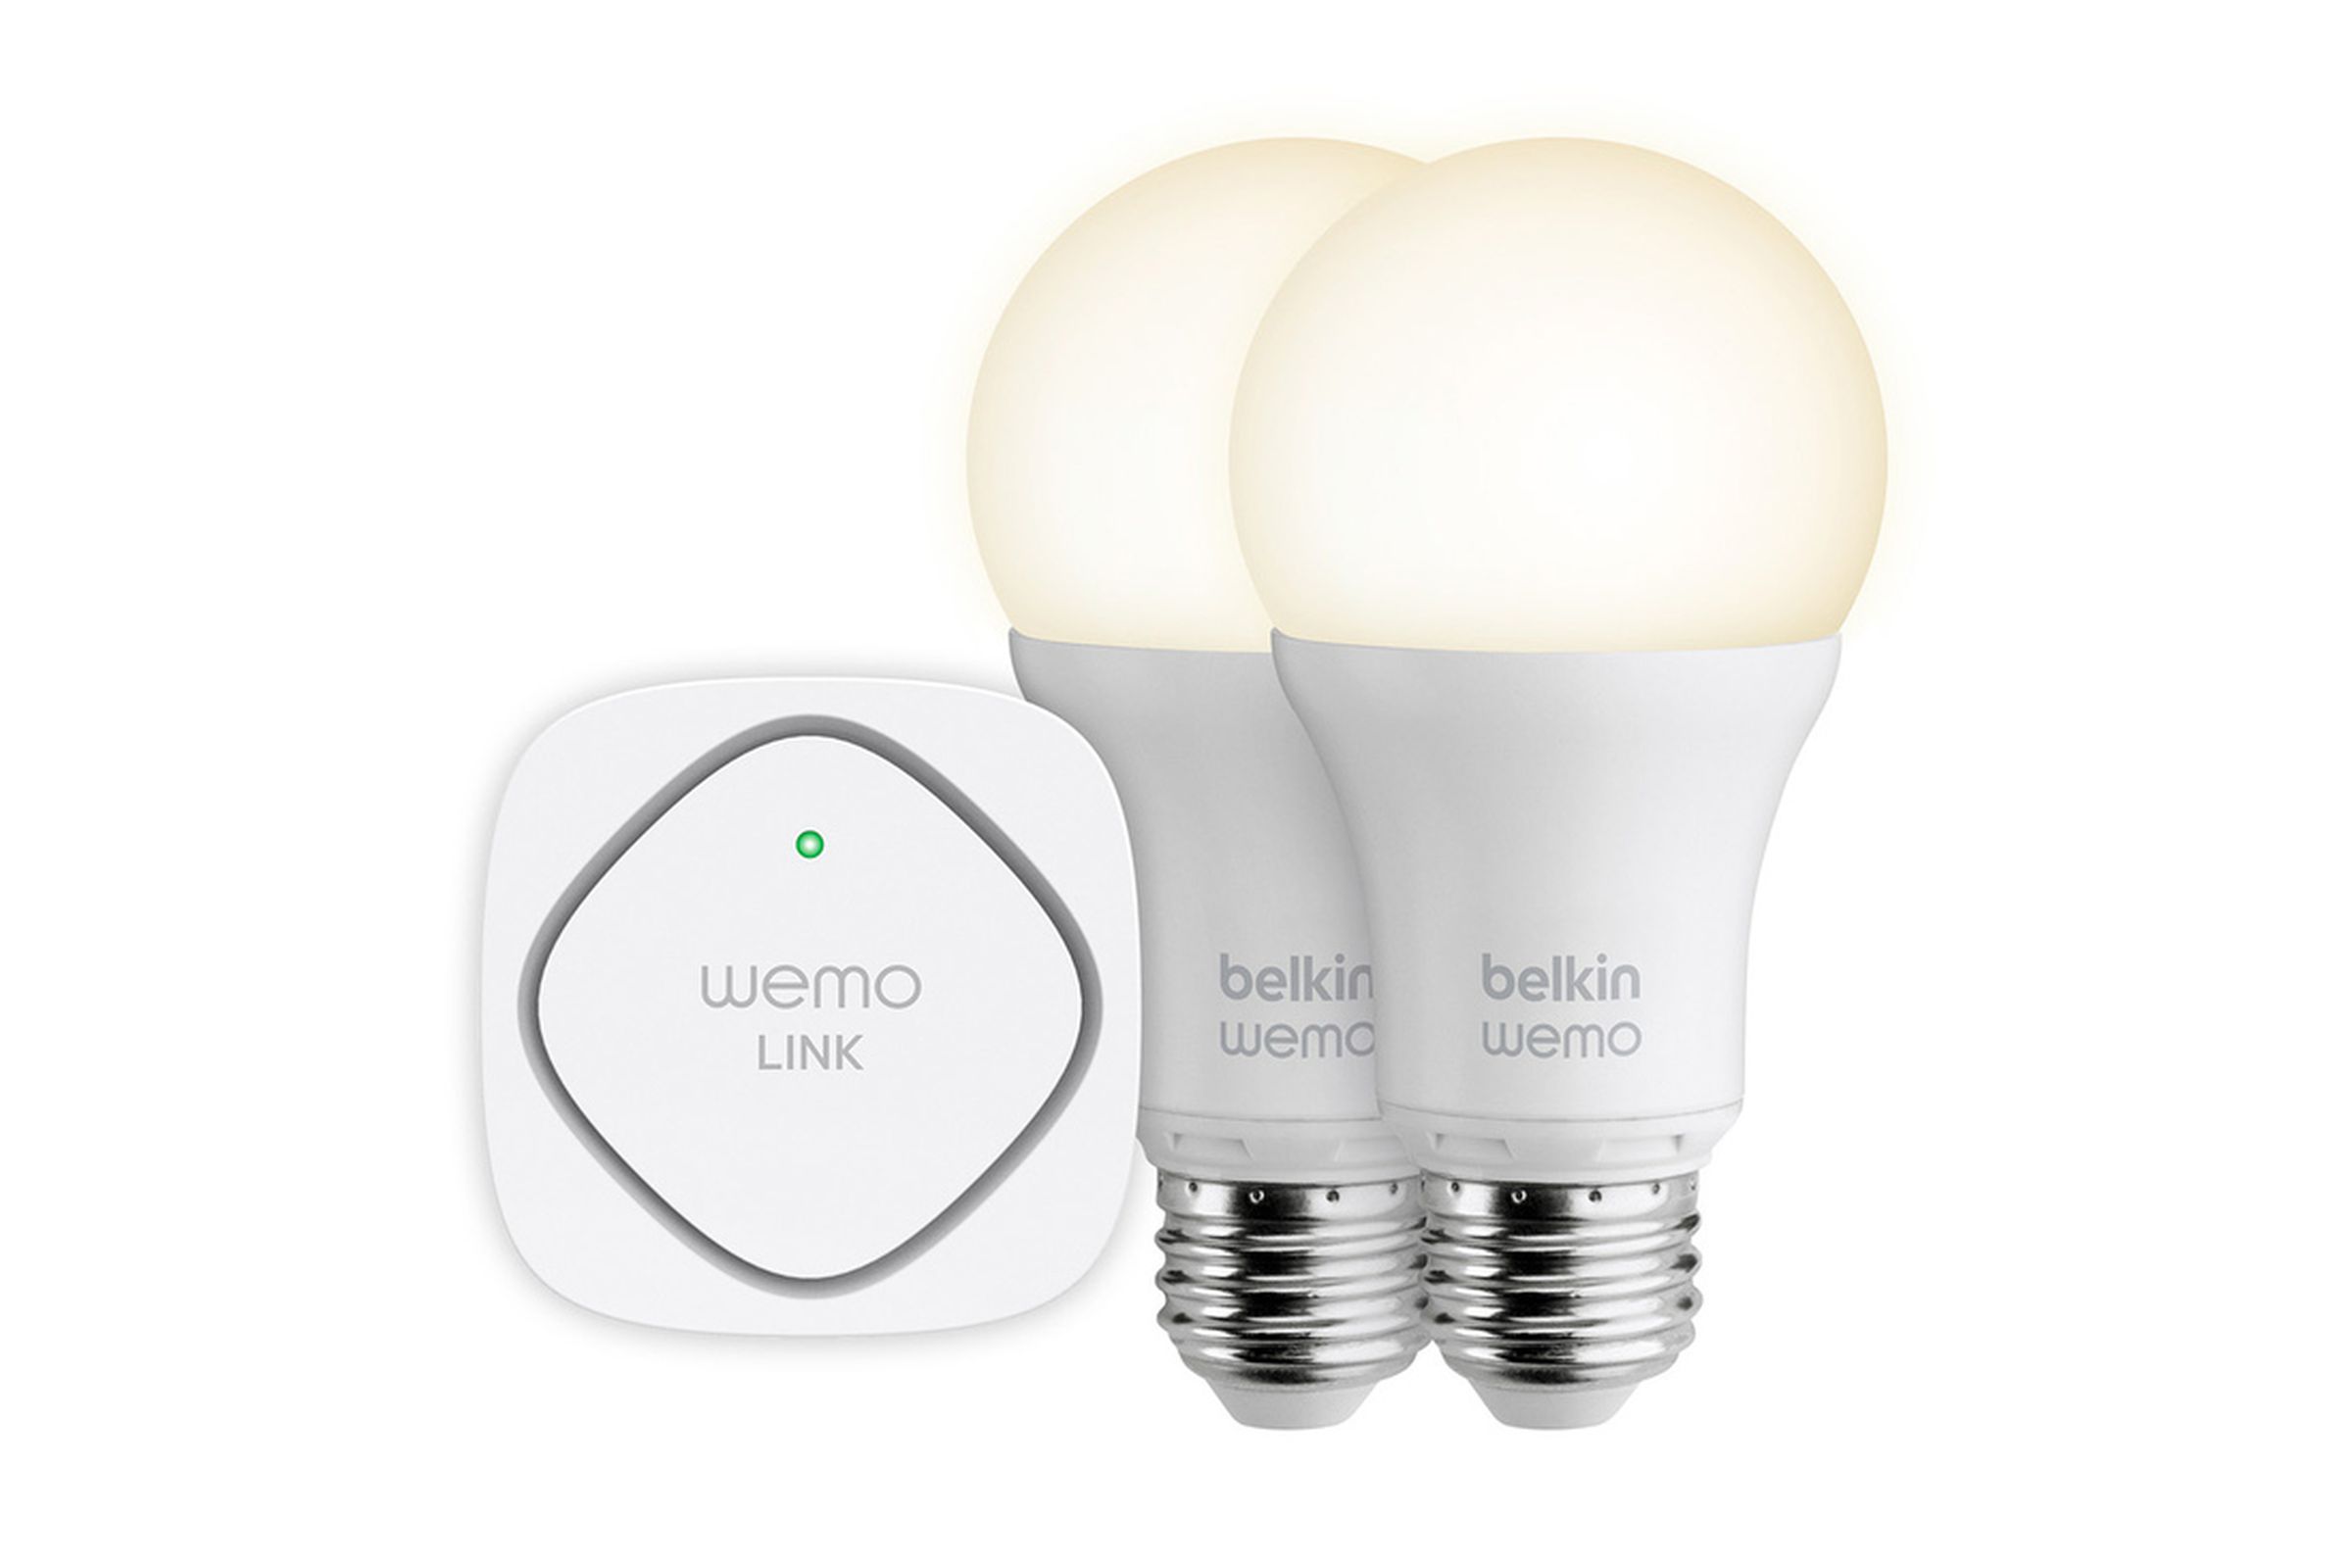 Belkin LED Lighting Starter Set